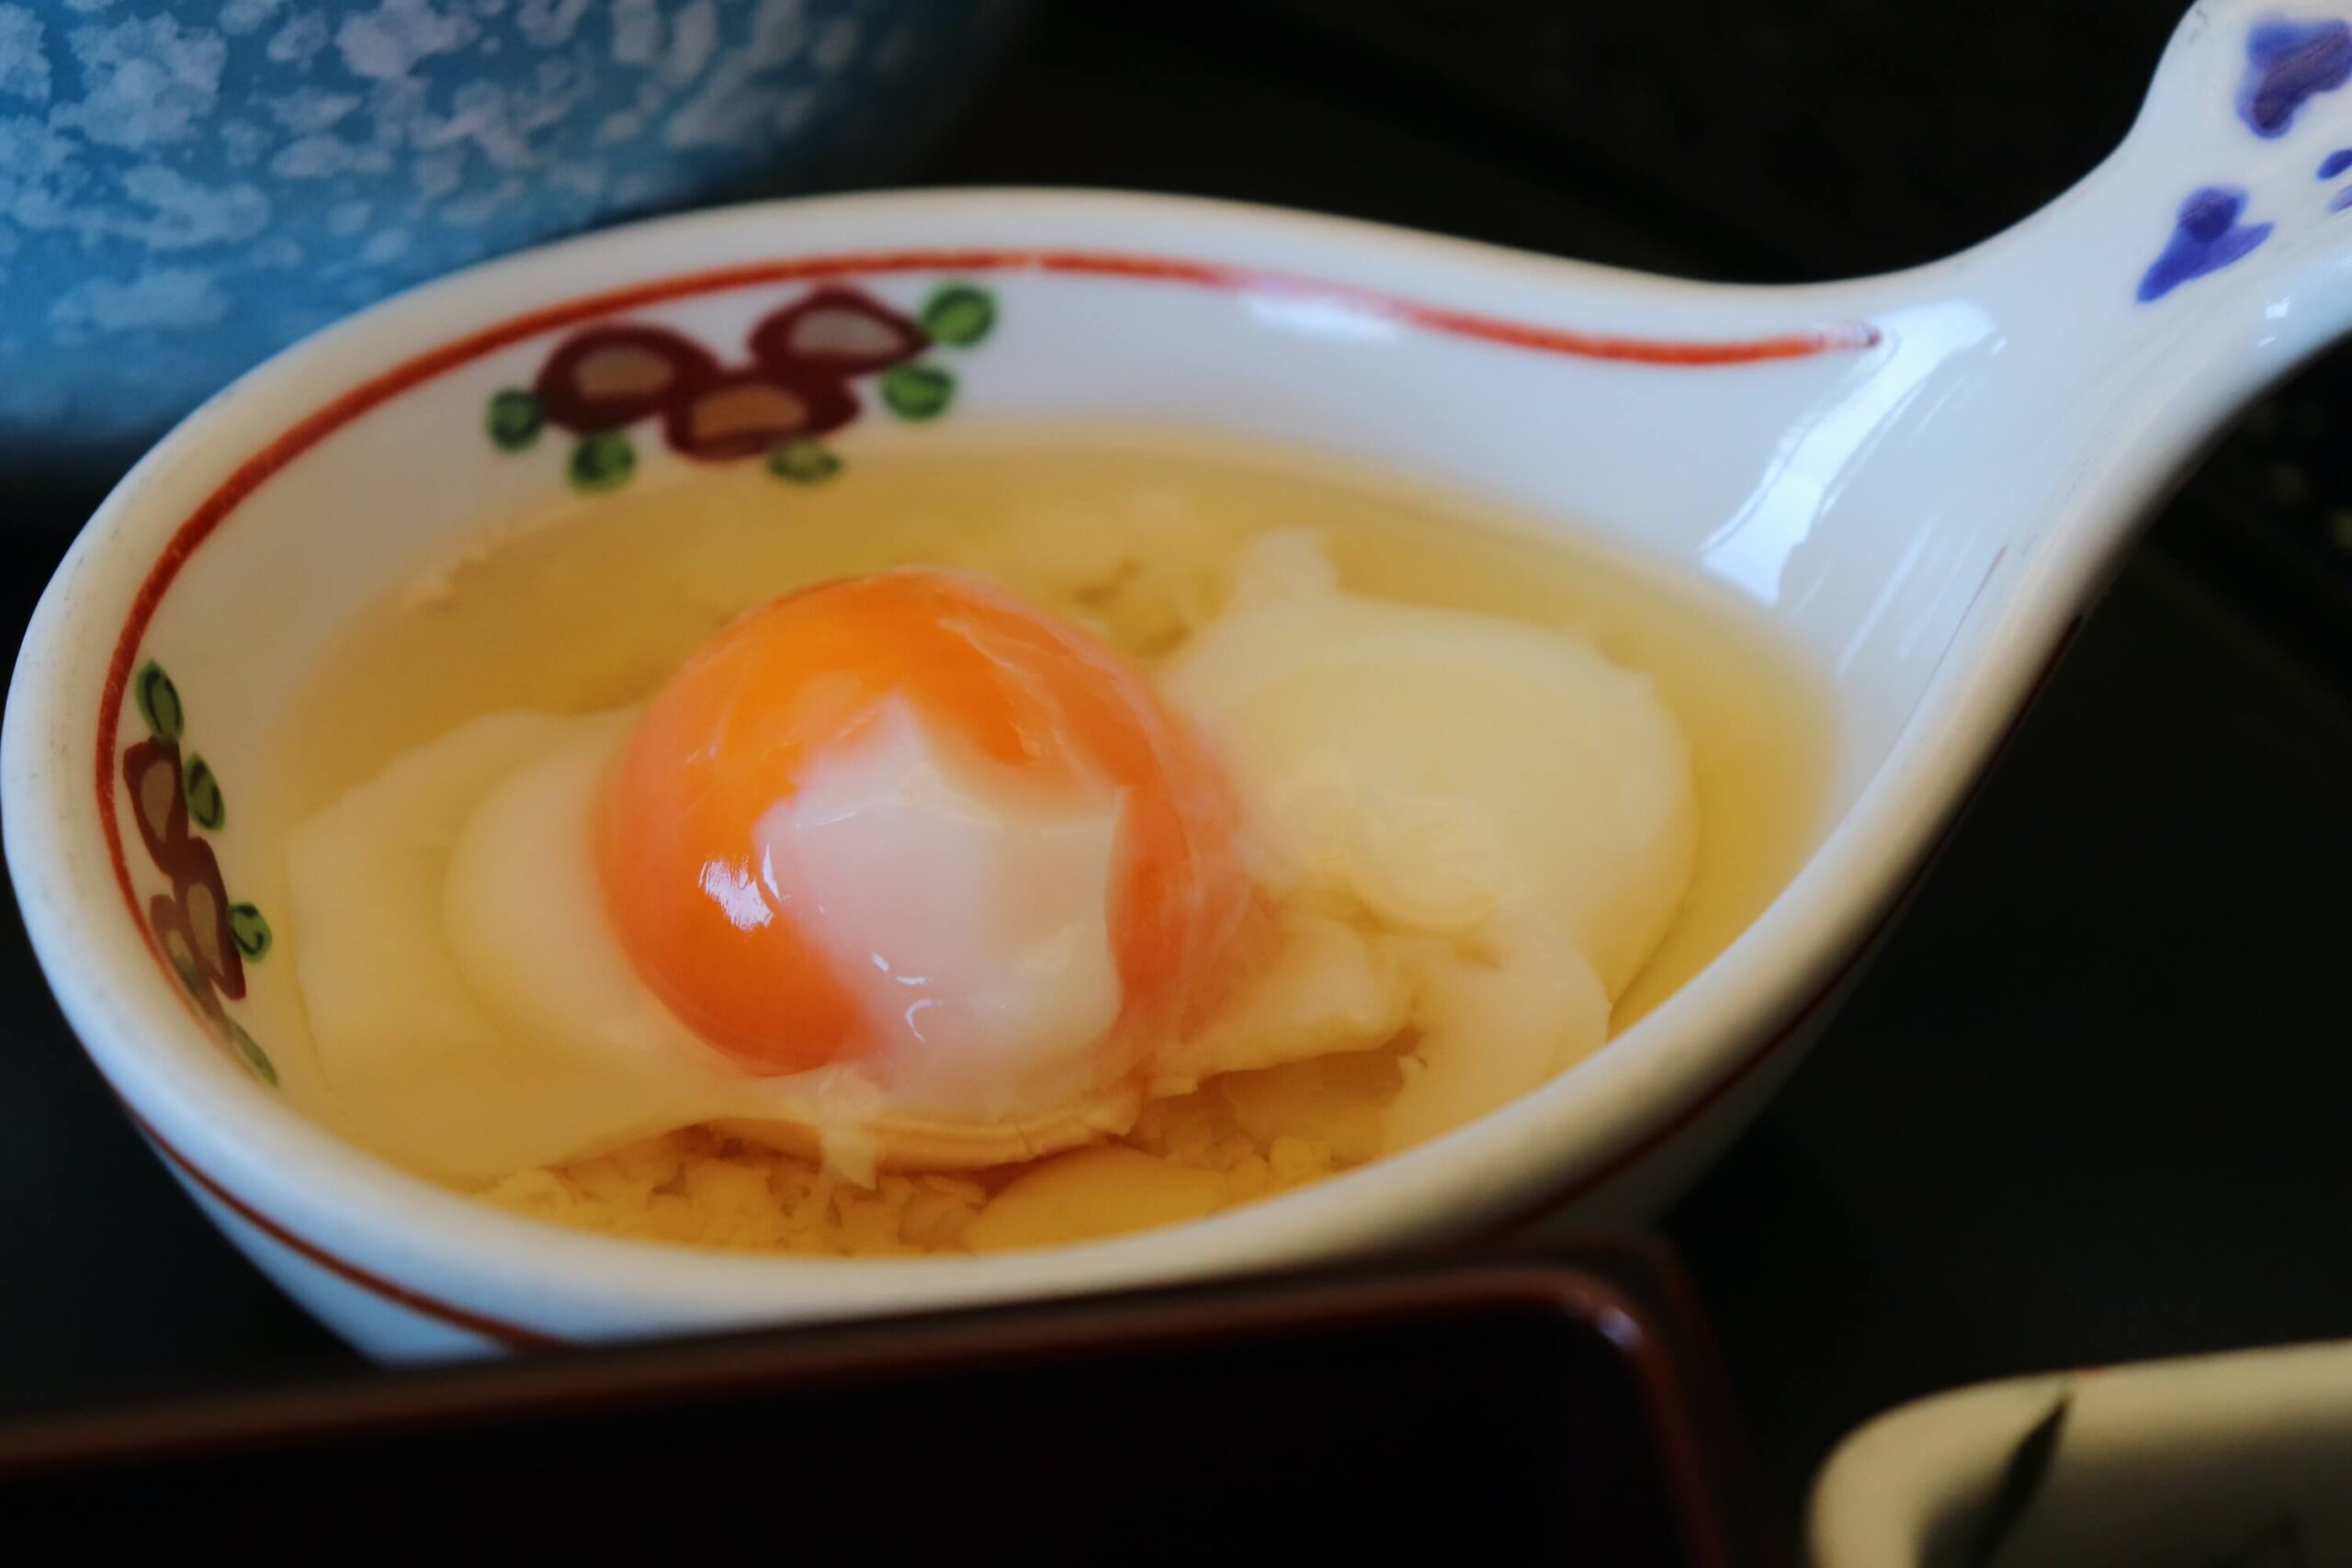 粋松亭の朝食の温泉卵